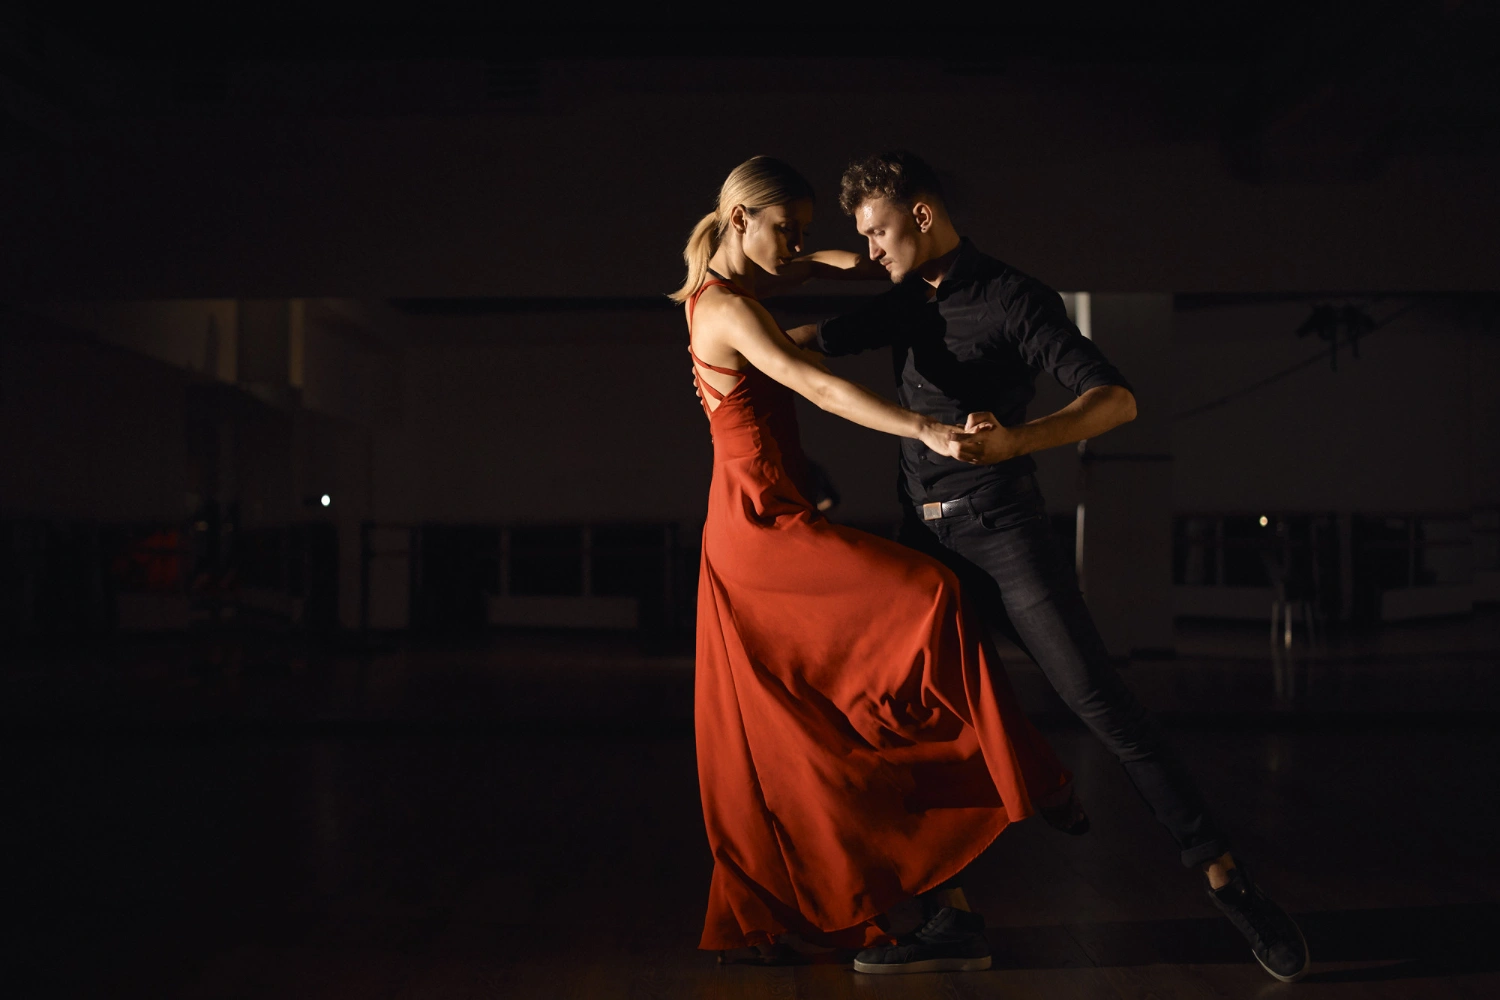 Psychológia tanca: Ako pohyb v sprievode hudby ovplyvňuje myseľ?